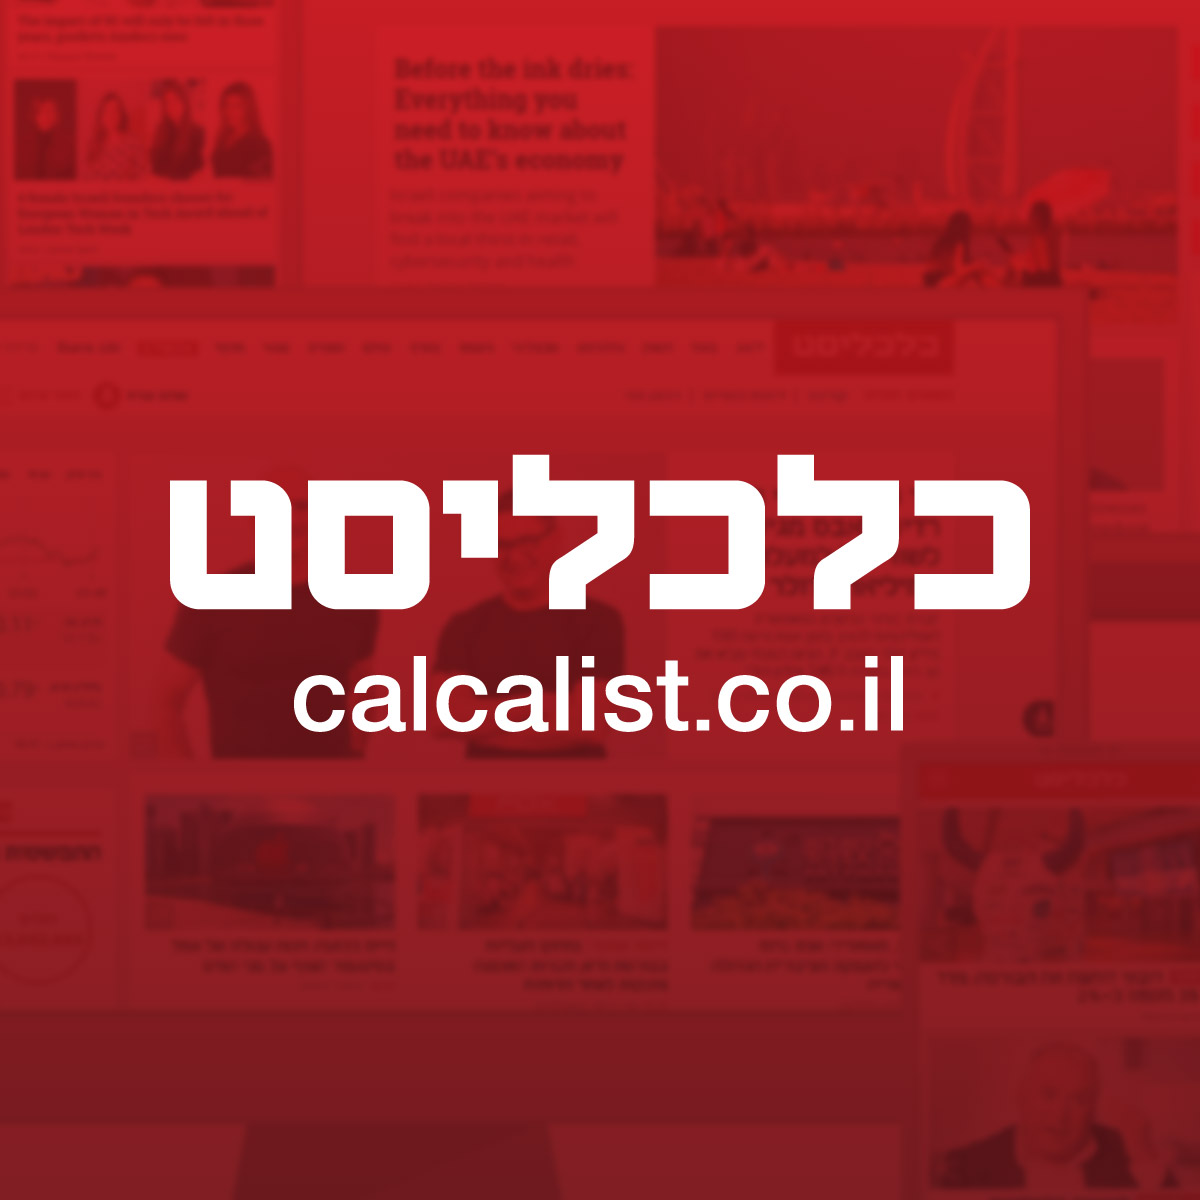 www.calcalist.co.il